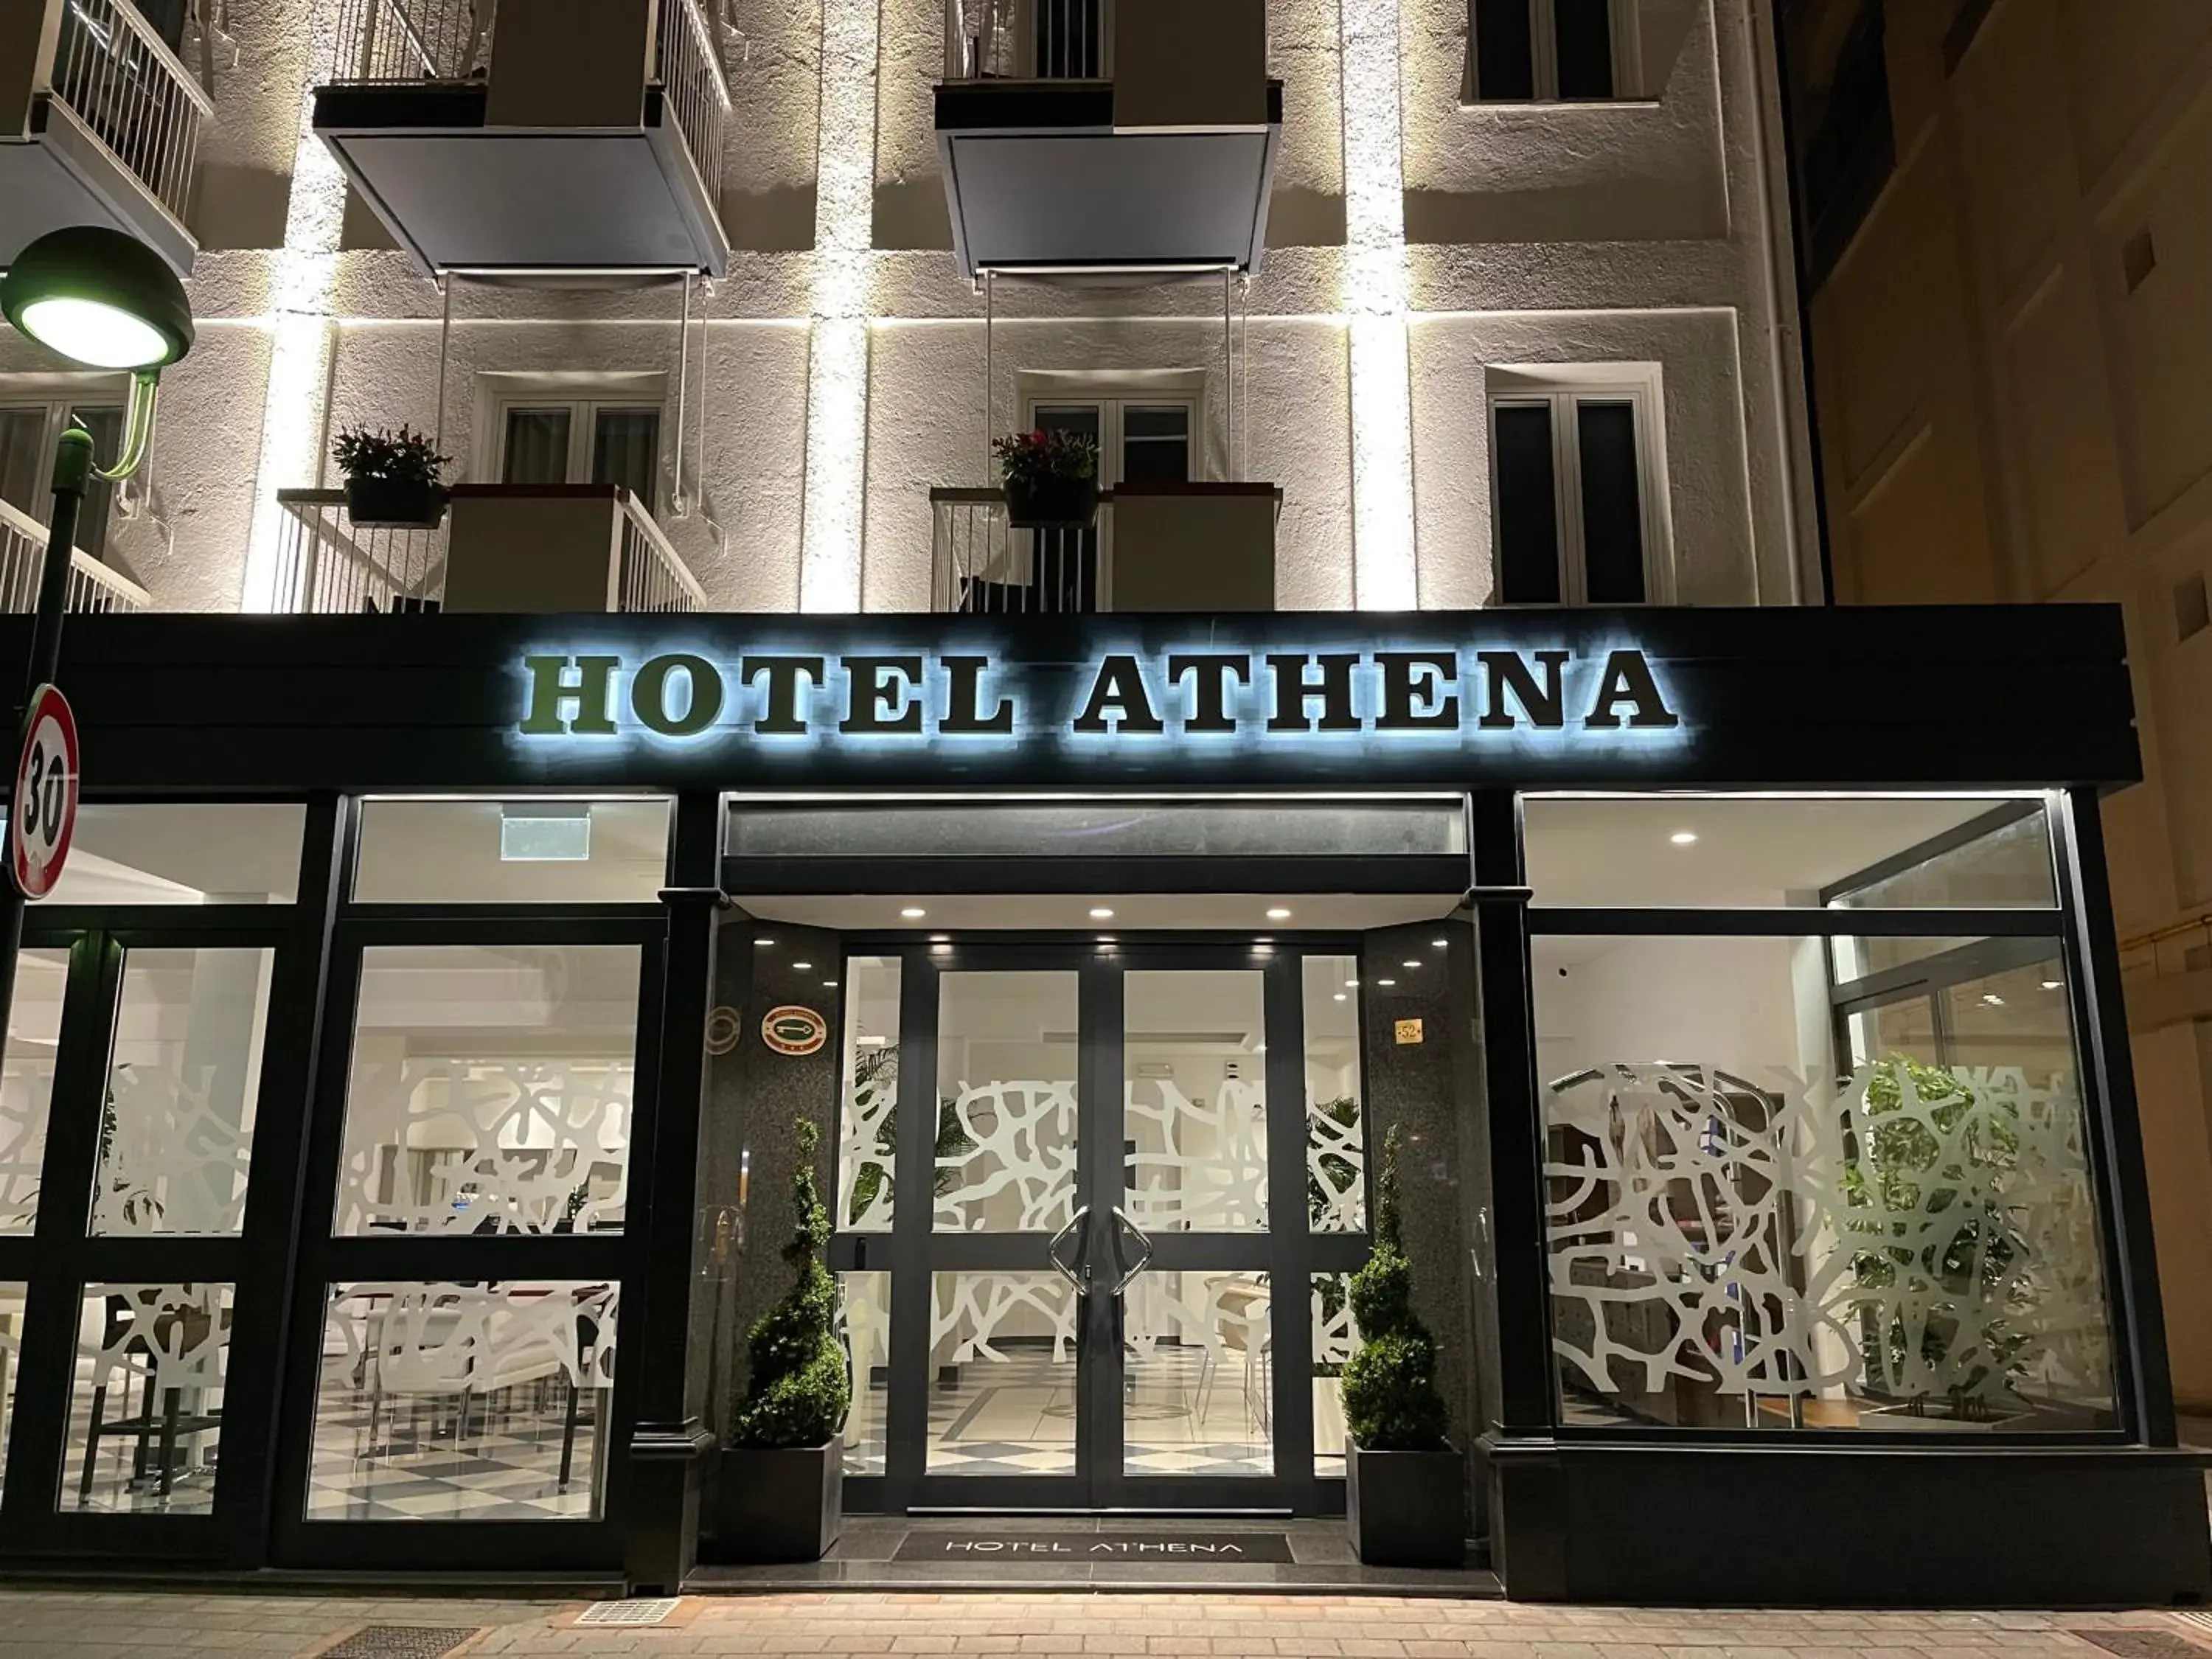 Facade/entrance in Hotel Athena